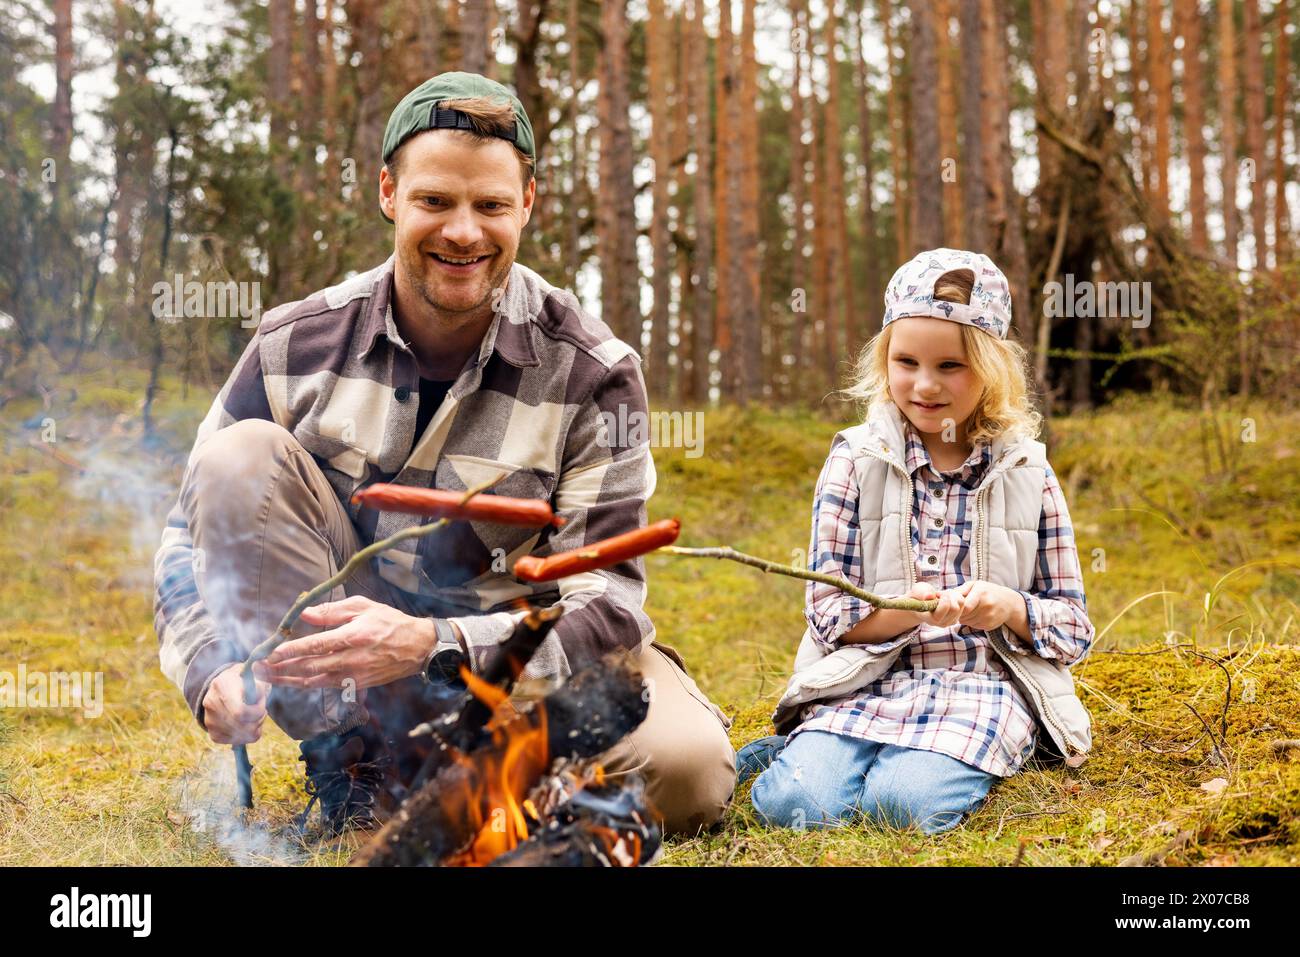 Vater und Tochter verbringen Zeit miteinander und braten Würstchen am Lagerfeuer, während sie im Wald campen. Bonding-Aktivitäten Stockfoto